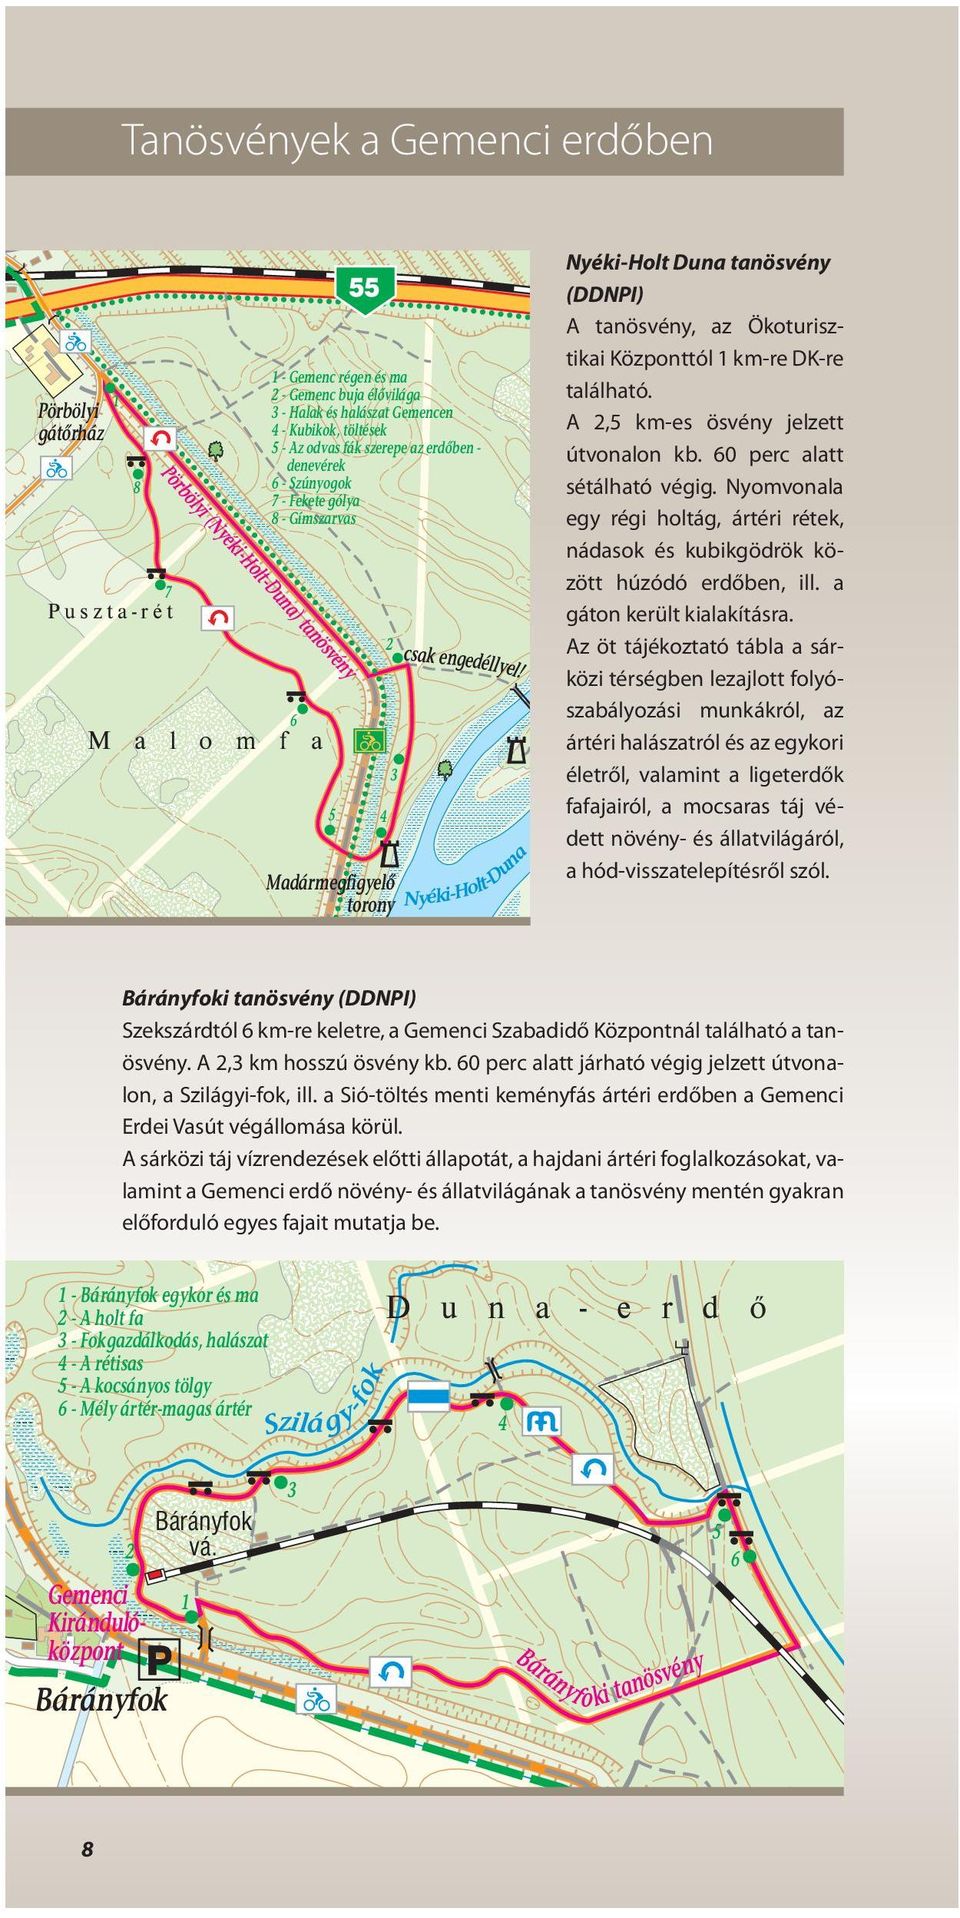 Nyéki-Hot-Duna Nyéki-Hot Duna tanösvény (DDNPI) A tanösvény, az Ökoturisztikai Központtó 1 km-re DK-re taáható. A 2,5 km-es ösvény jezett útvonaon kb. 60 perc aatt sétáható végig.